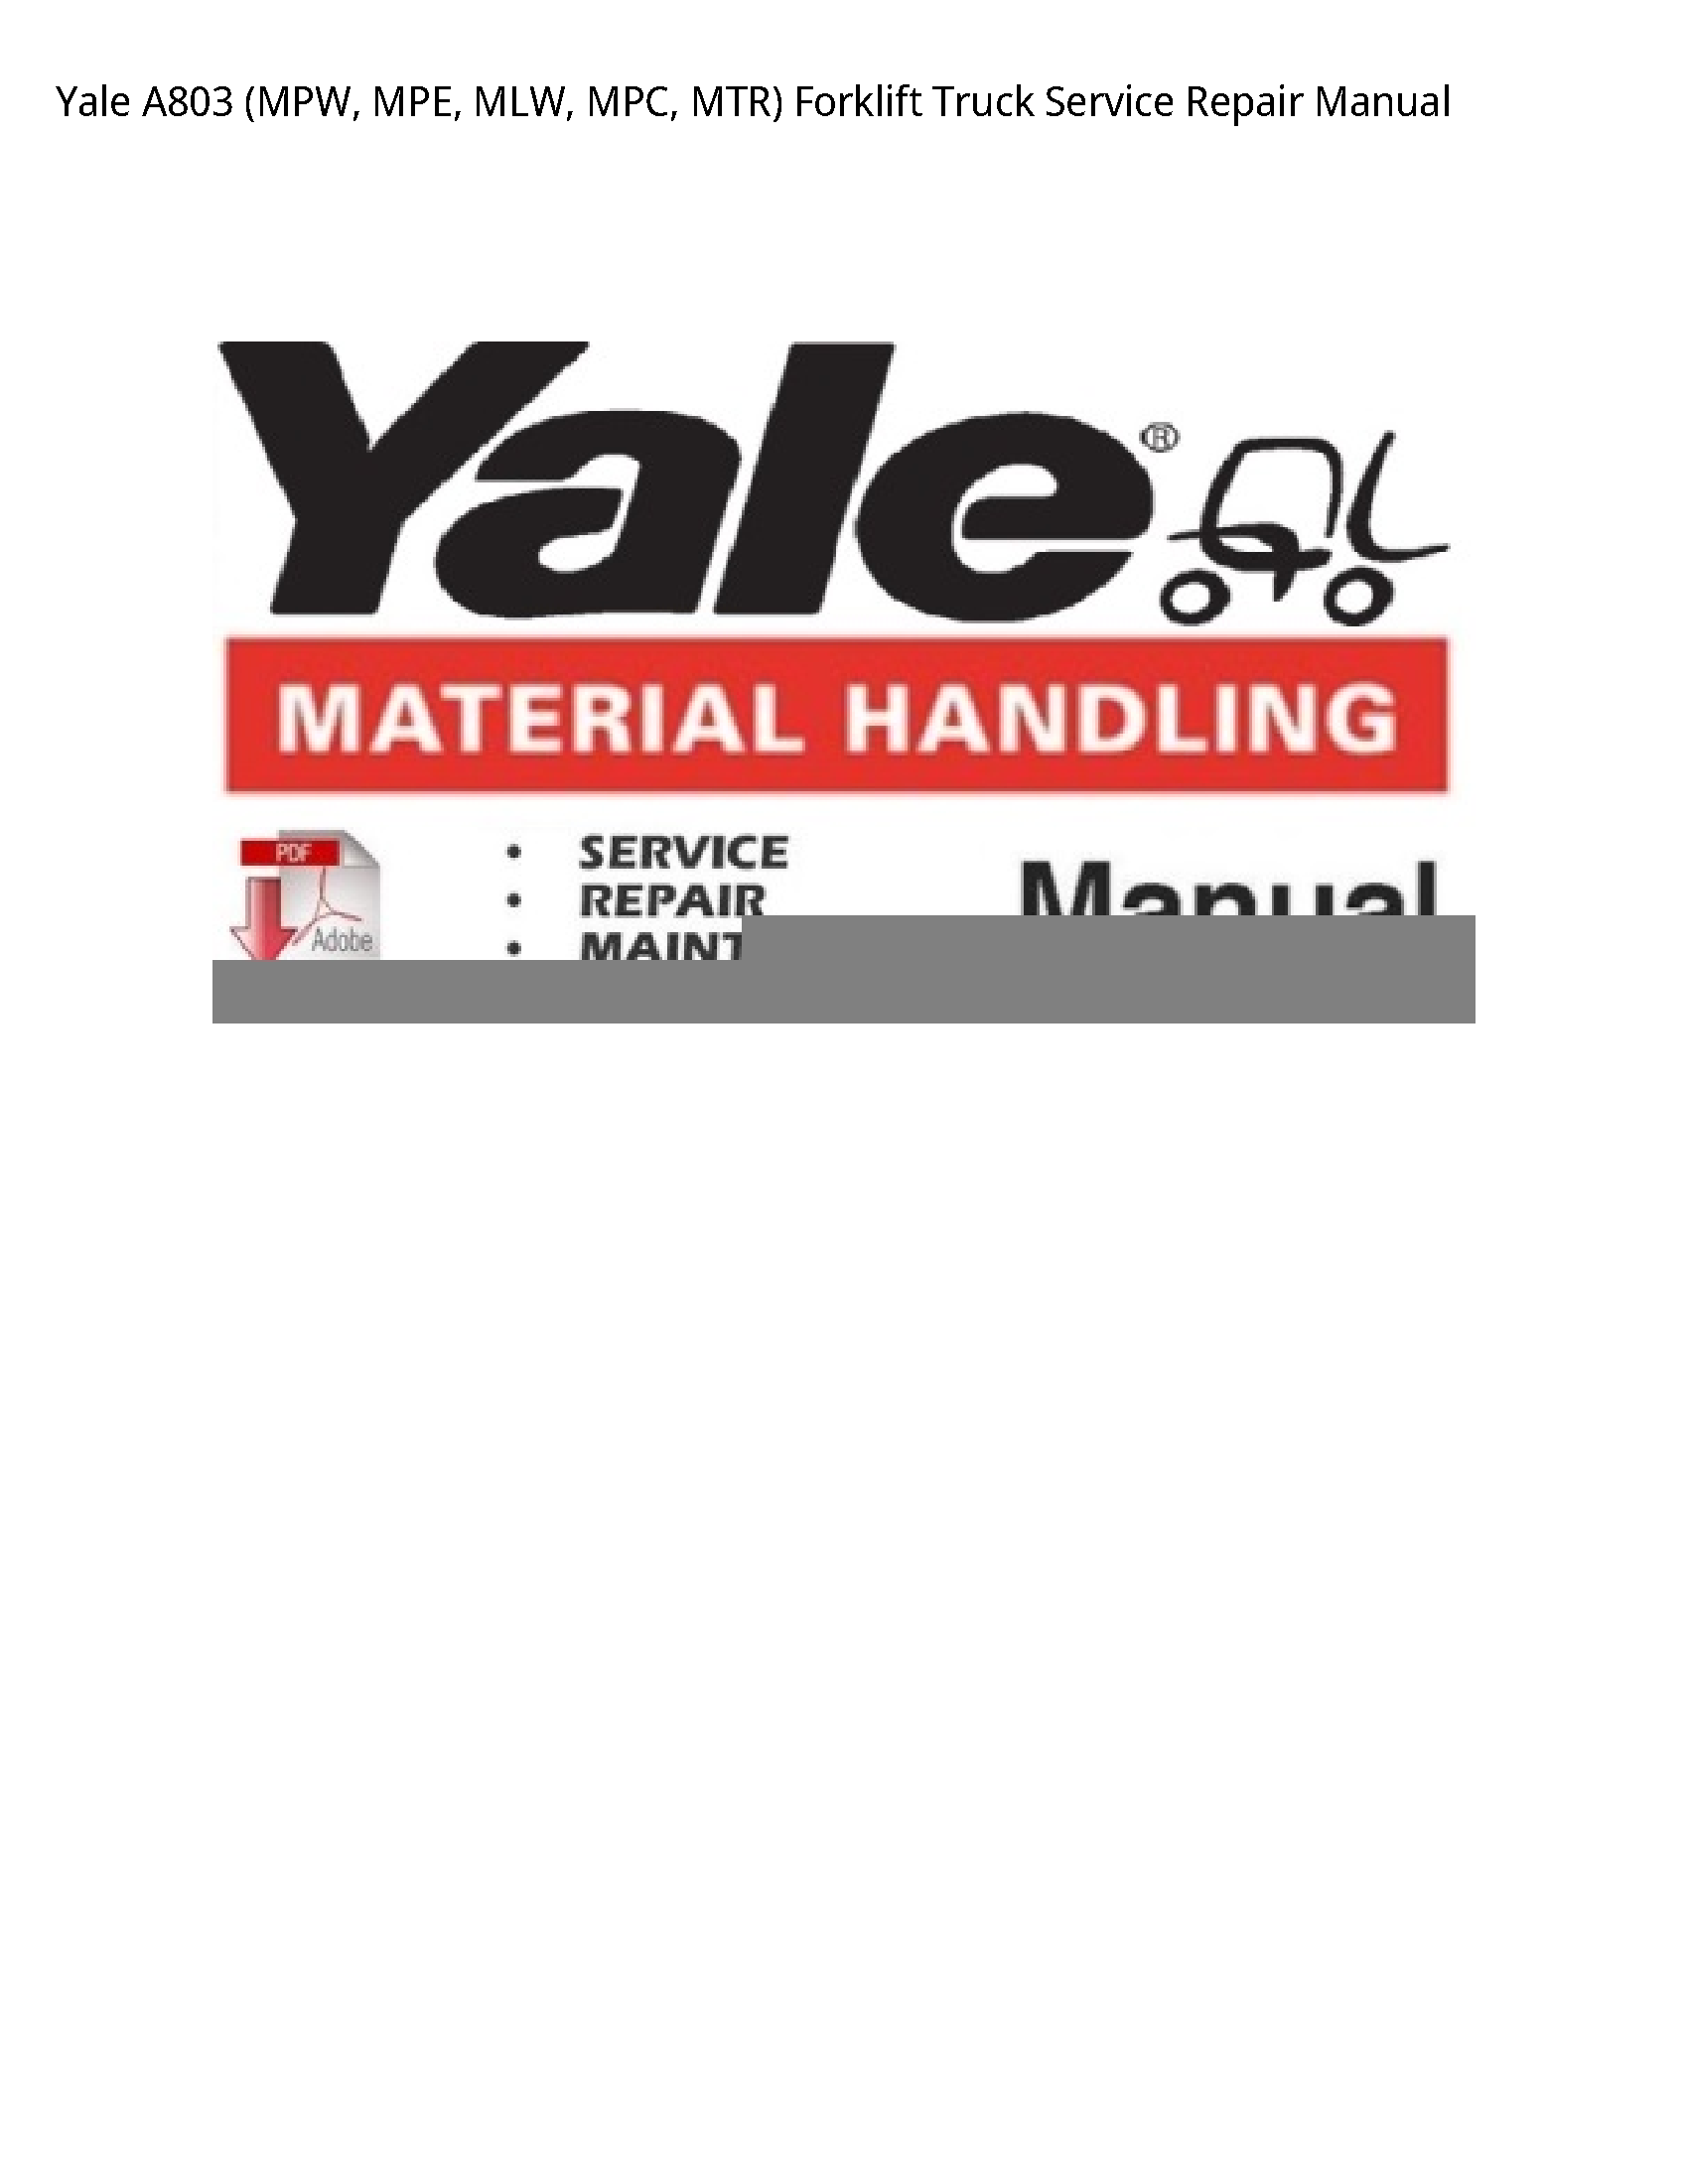 Yale A803 (MPW manual